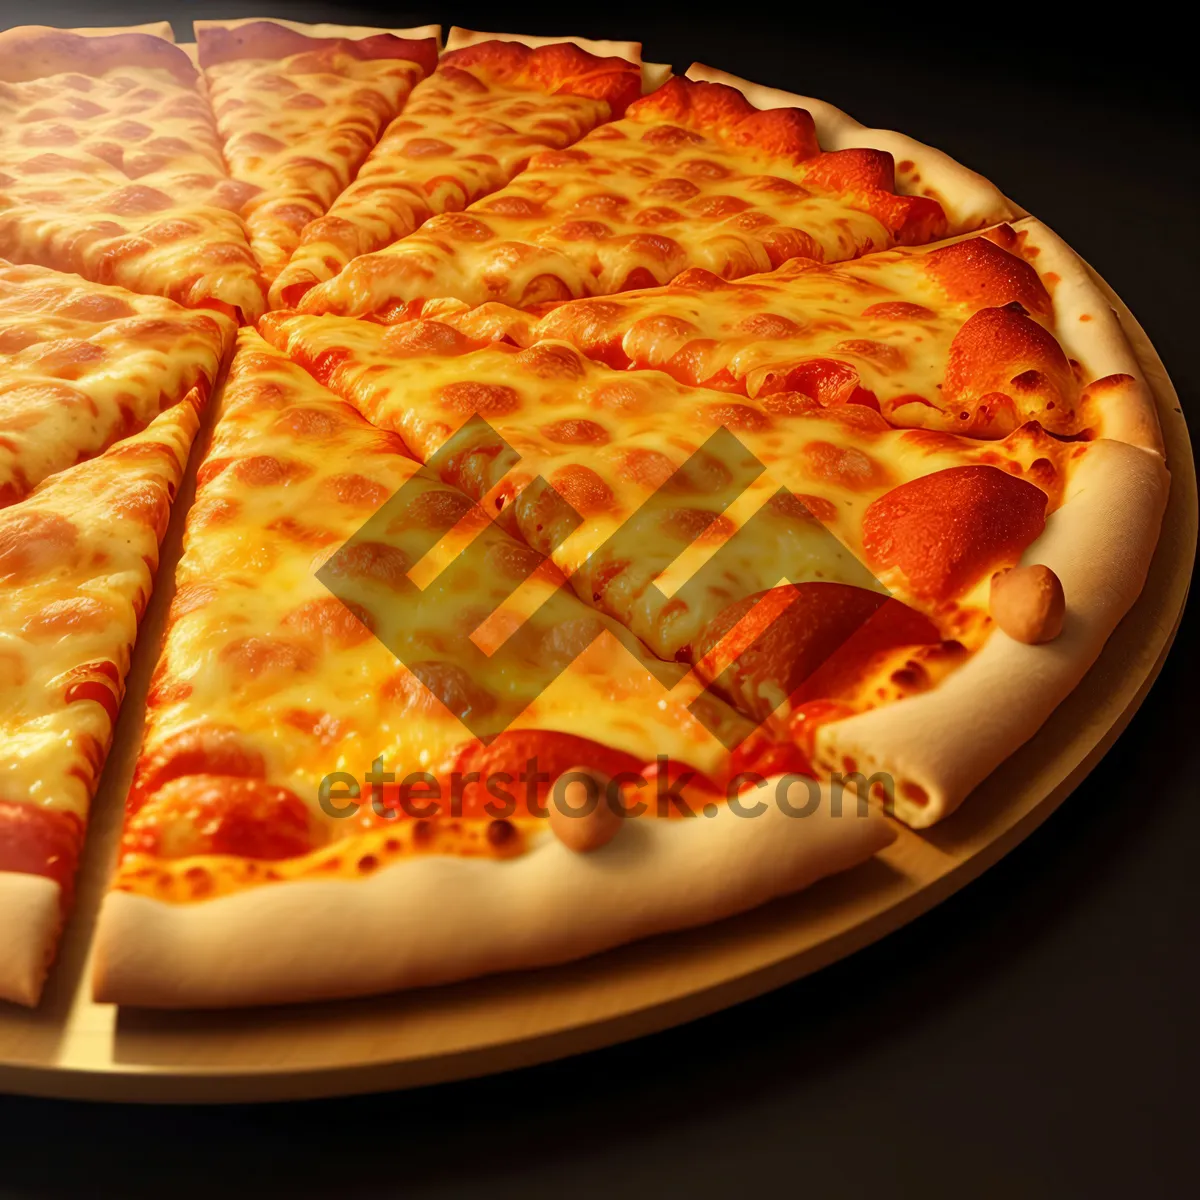 Picture of Delicious Pepperoni Pizza Slice with Mozzarella Cheese